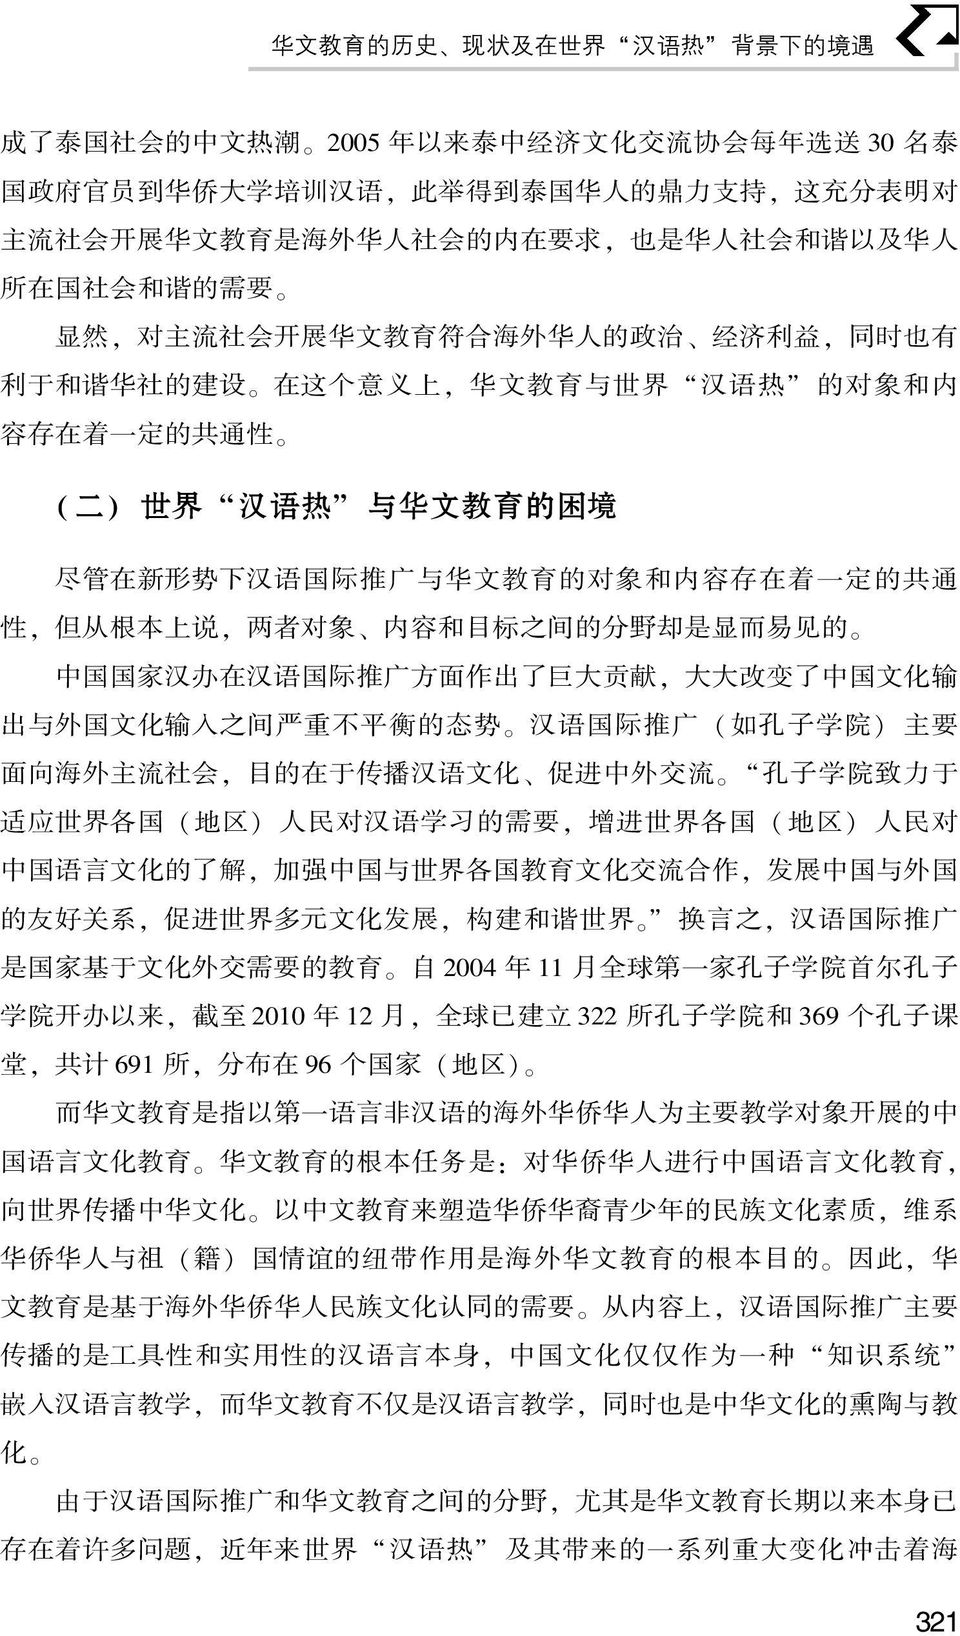 一 定 的 共 通 性 ( 二 ) 世 界 汉 语 热 与 华 文 教 育 的 困 境 尽 管 在 新 形 势 下 汉 语 国 际 推 广 与 华 文 教 育 的 对 象 和 内 容 存 在 着 一 定 的 共 通 性, 但 从 根 本 上 说, 两 者 对 象 内 容 和 目 标 之 间 的 分 野 却 是 显 而 易 见 的 中 国 国 家 汉 办 在 汉 语 国 际 推 广 方 面 作 出